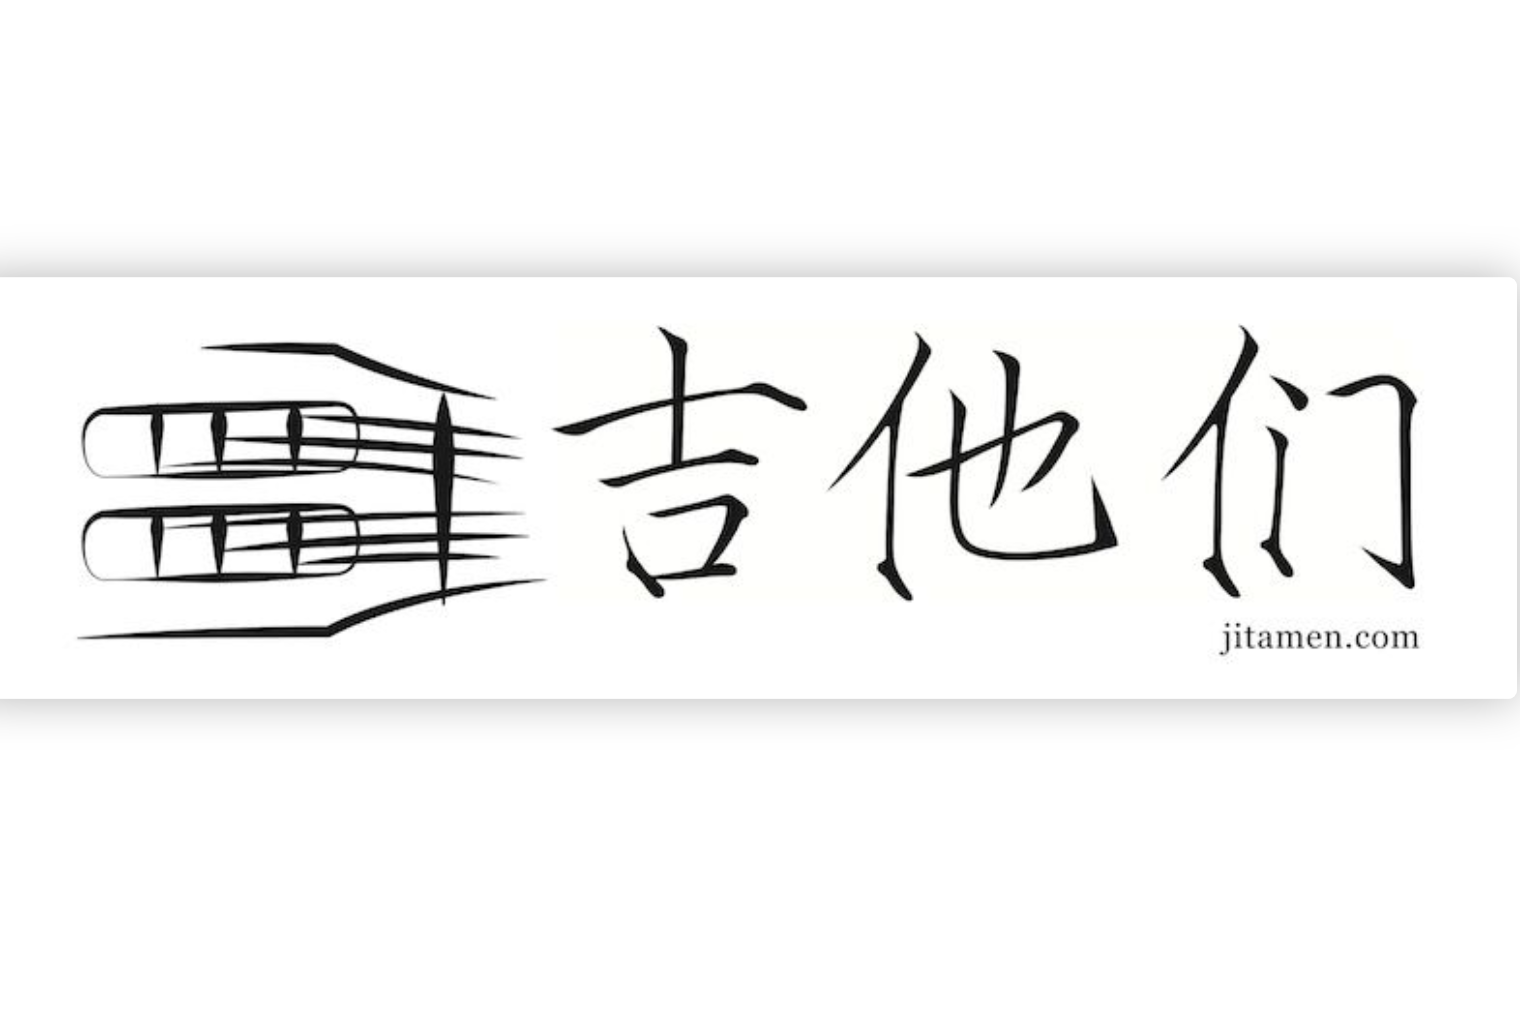 吉他们 JITAMEN.COM 现在在北京出售的琴
www.jitamen.com/jitamenguitars/